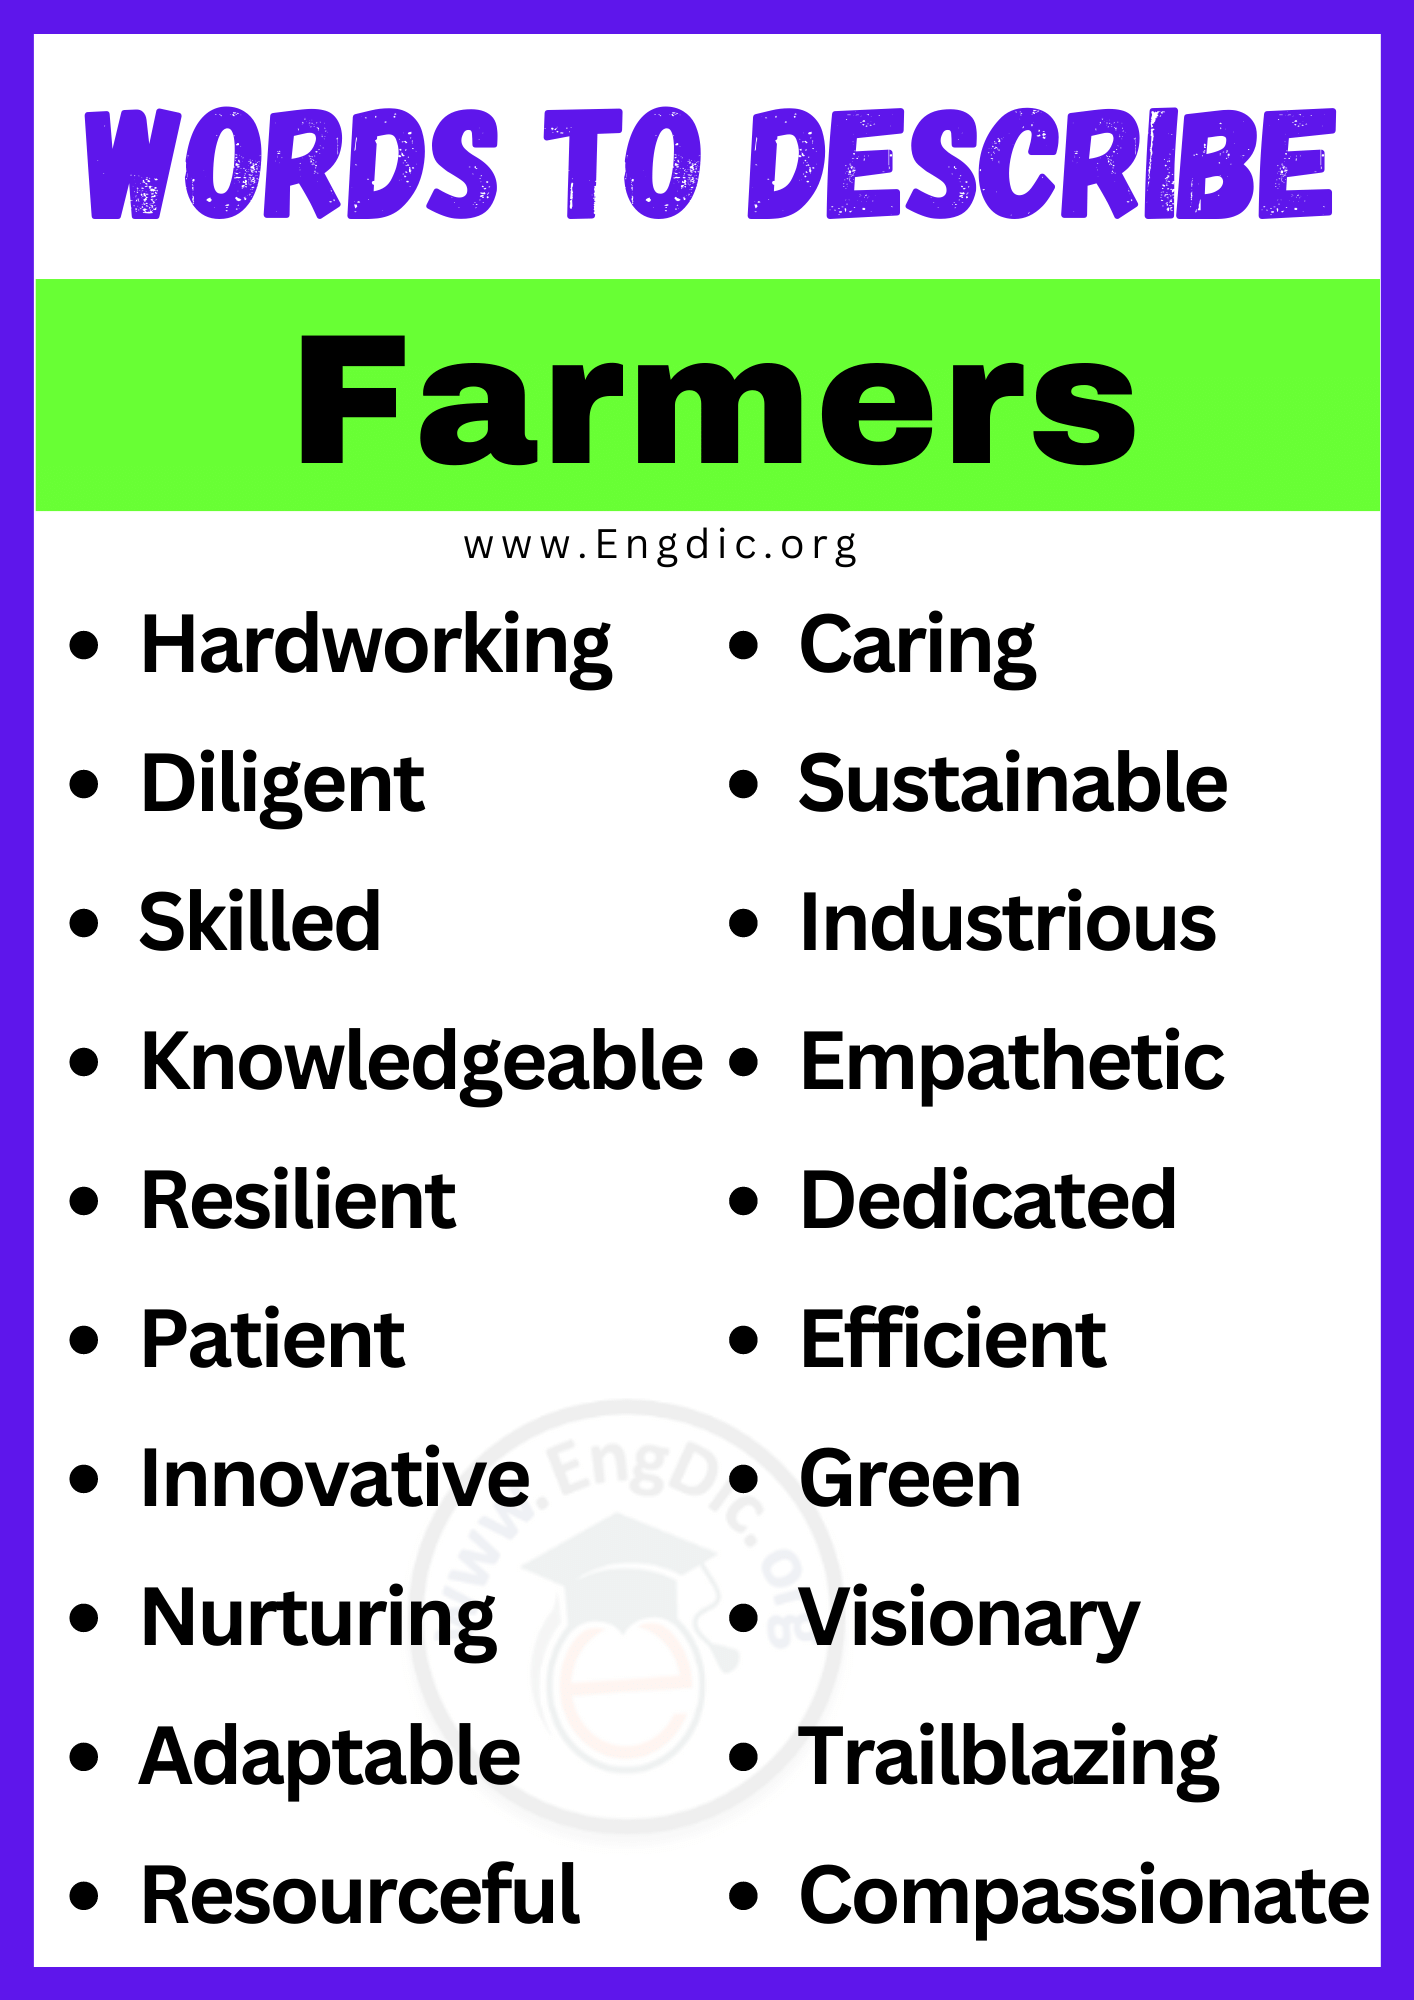 Words to Describe Farmers